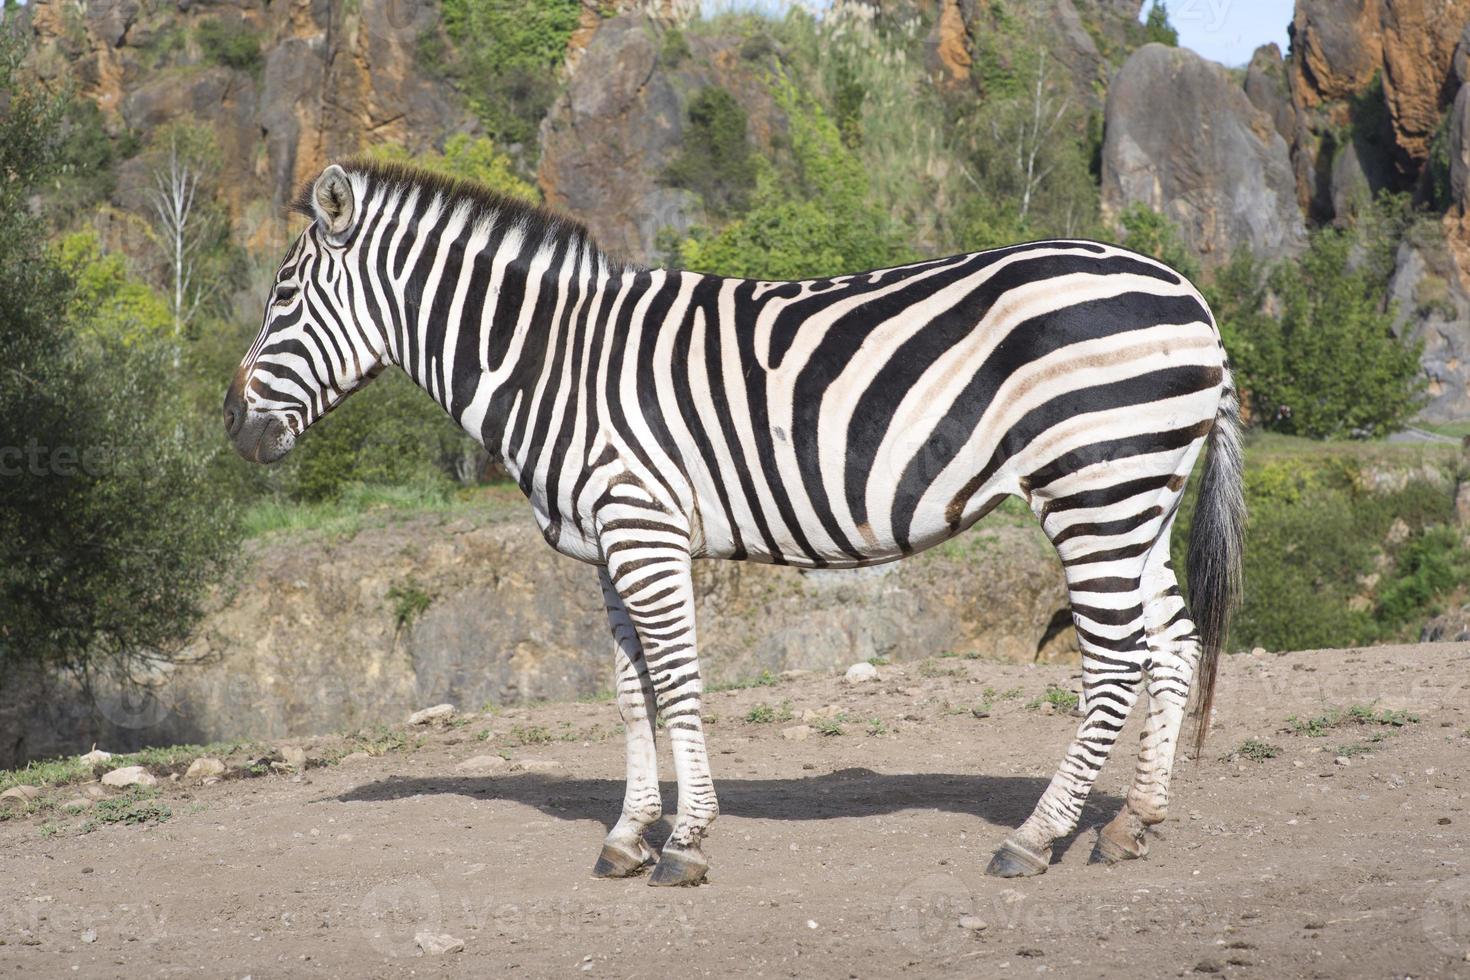 a zebra stands alone in a field photo